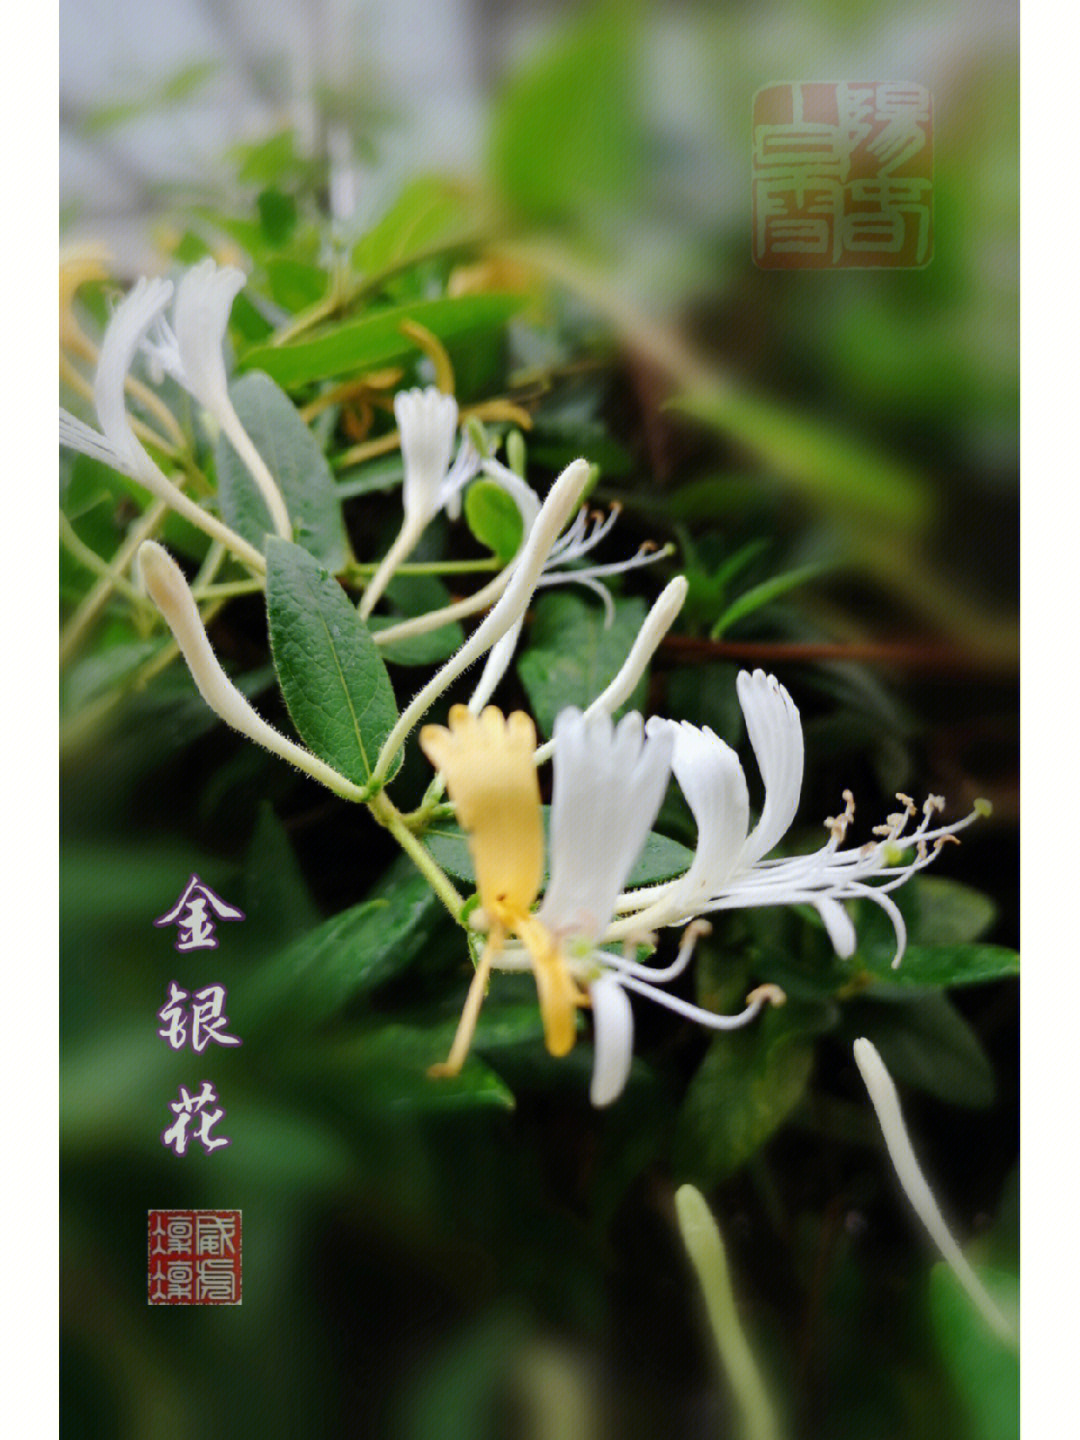 金银花是非常熟悉的中药,这种两色花的名字来自本草纲目,其实学名叫